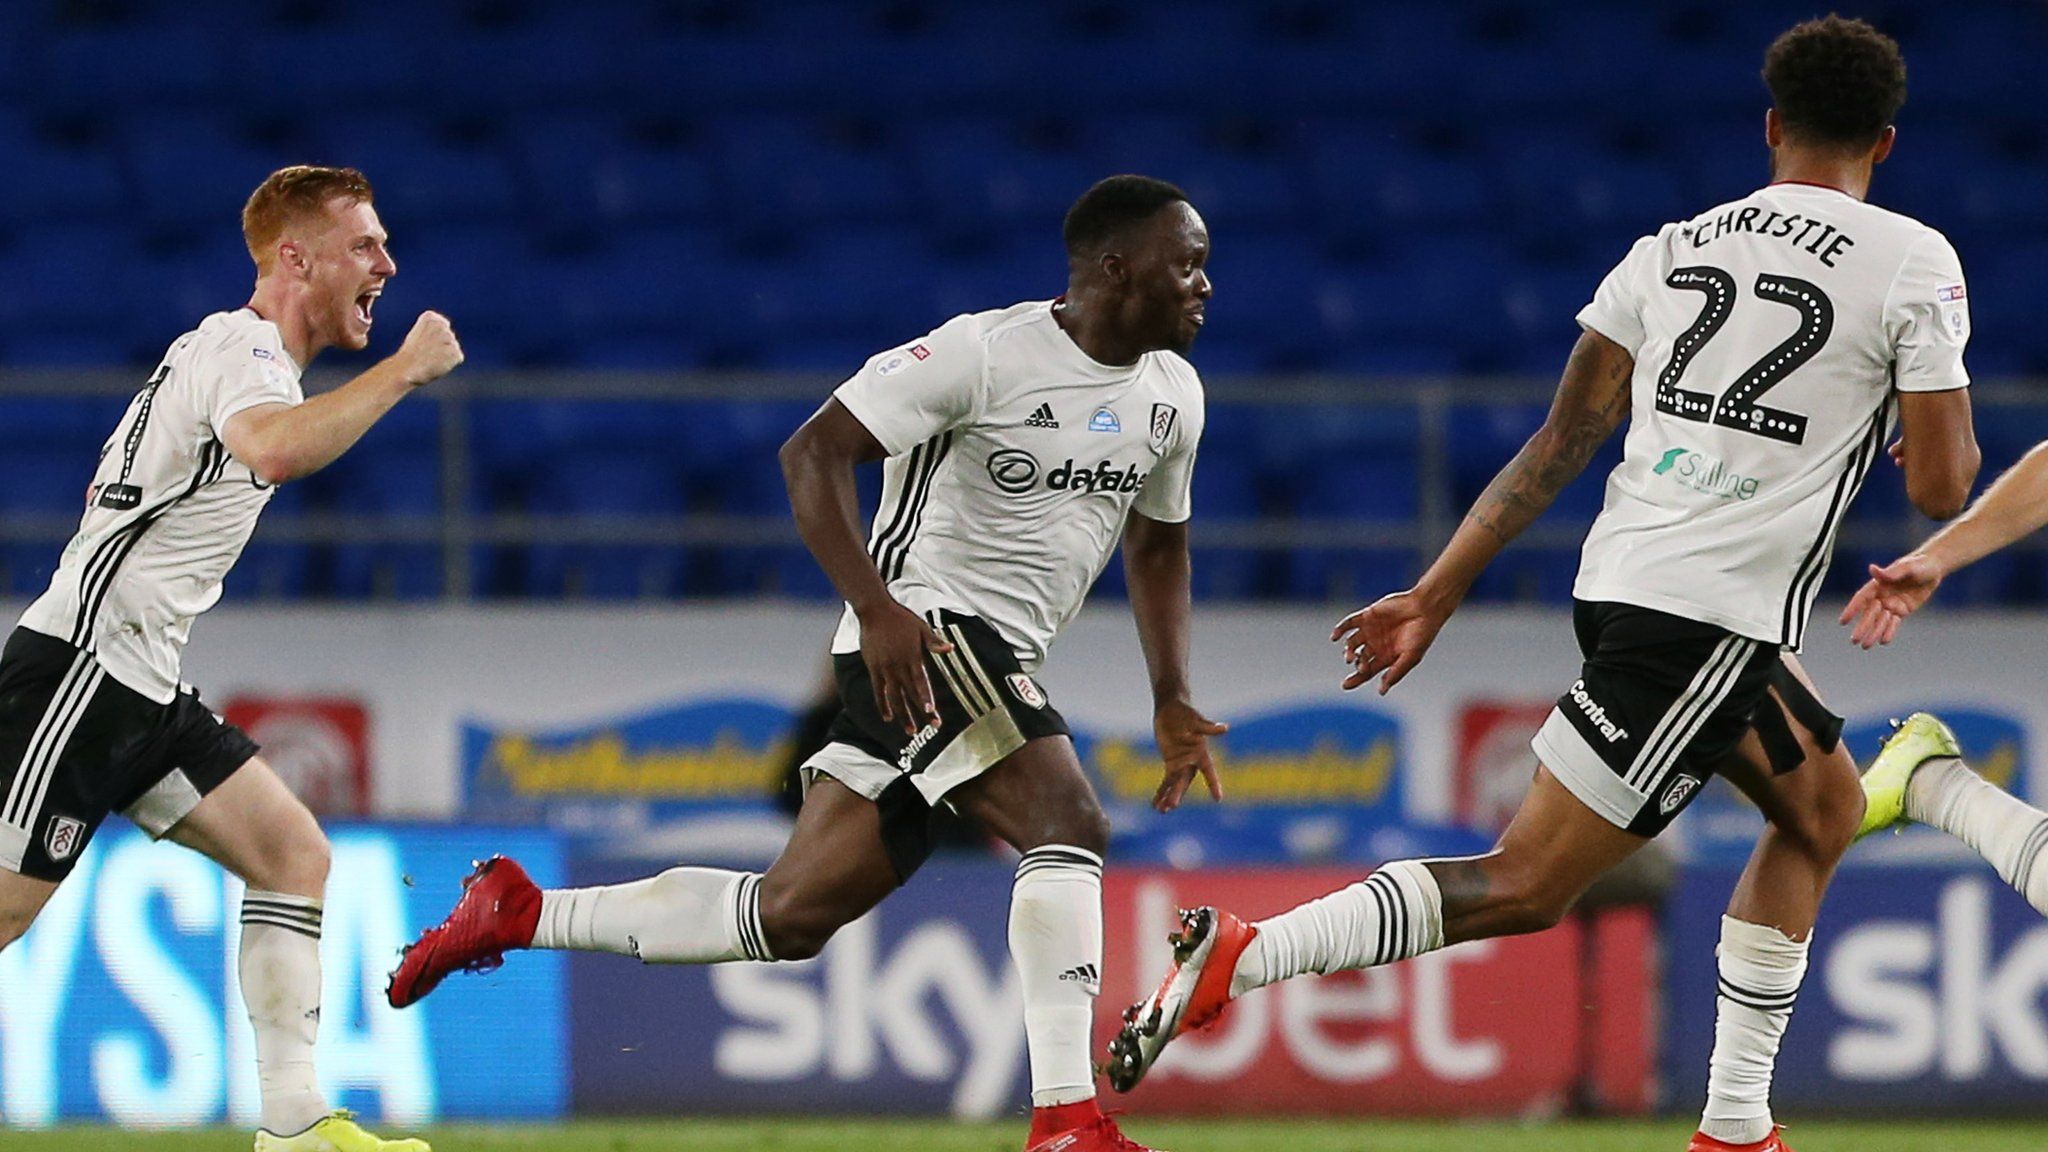 Neeskens Kebano celebrates his goal for Fulham